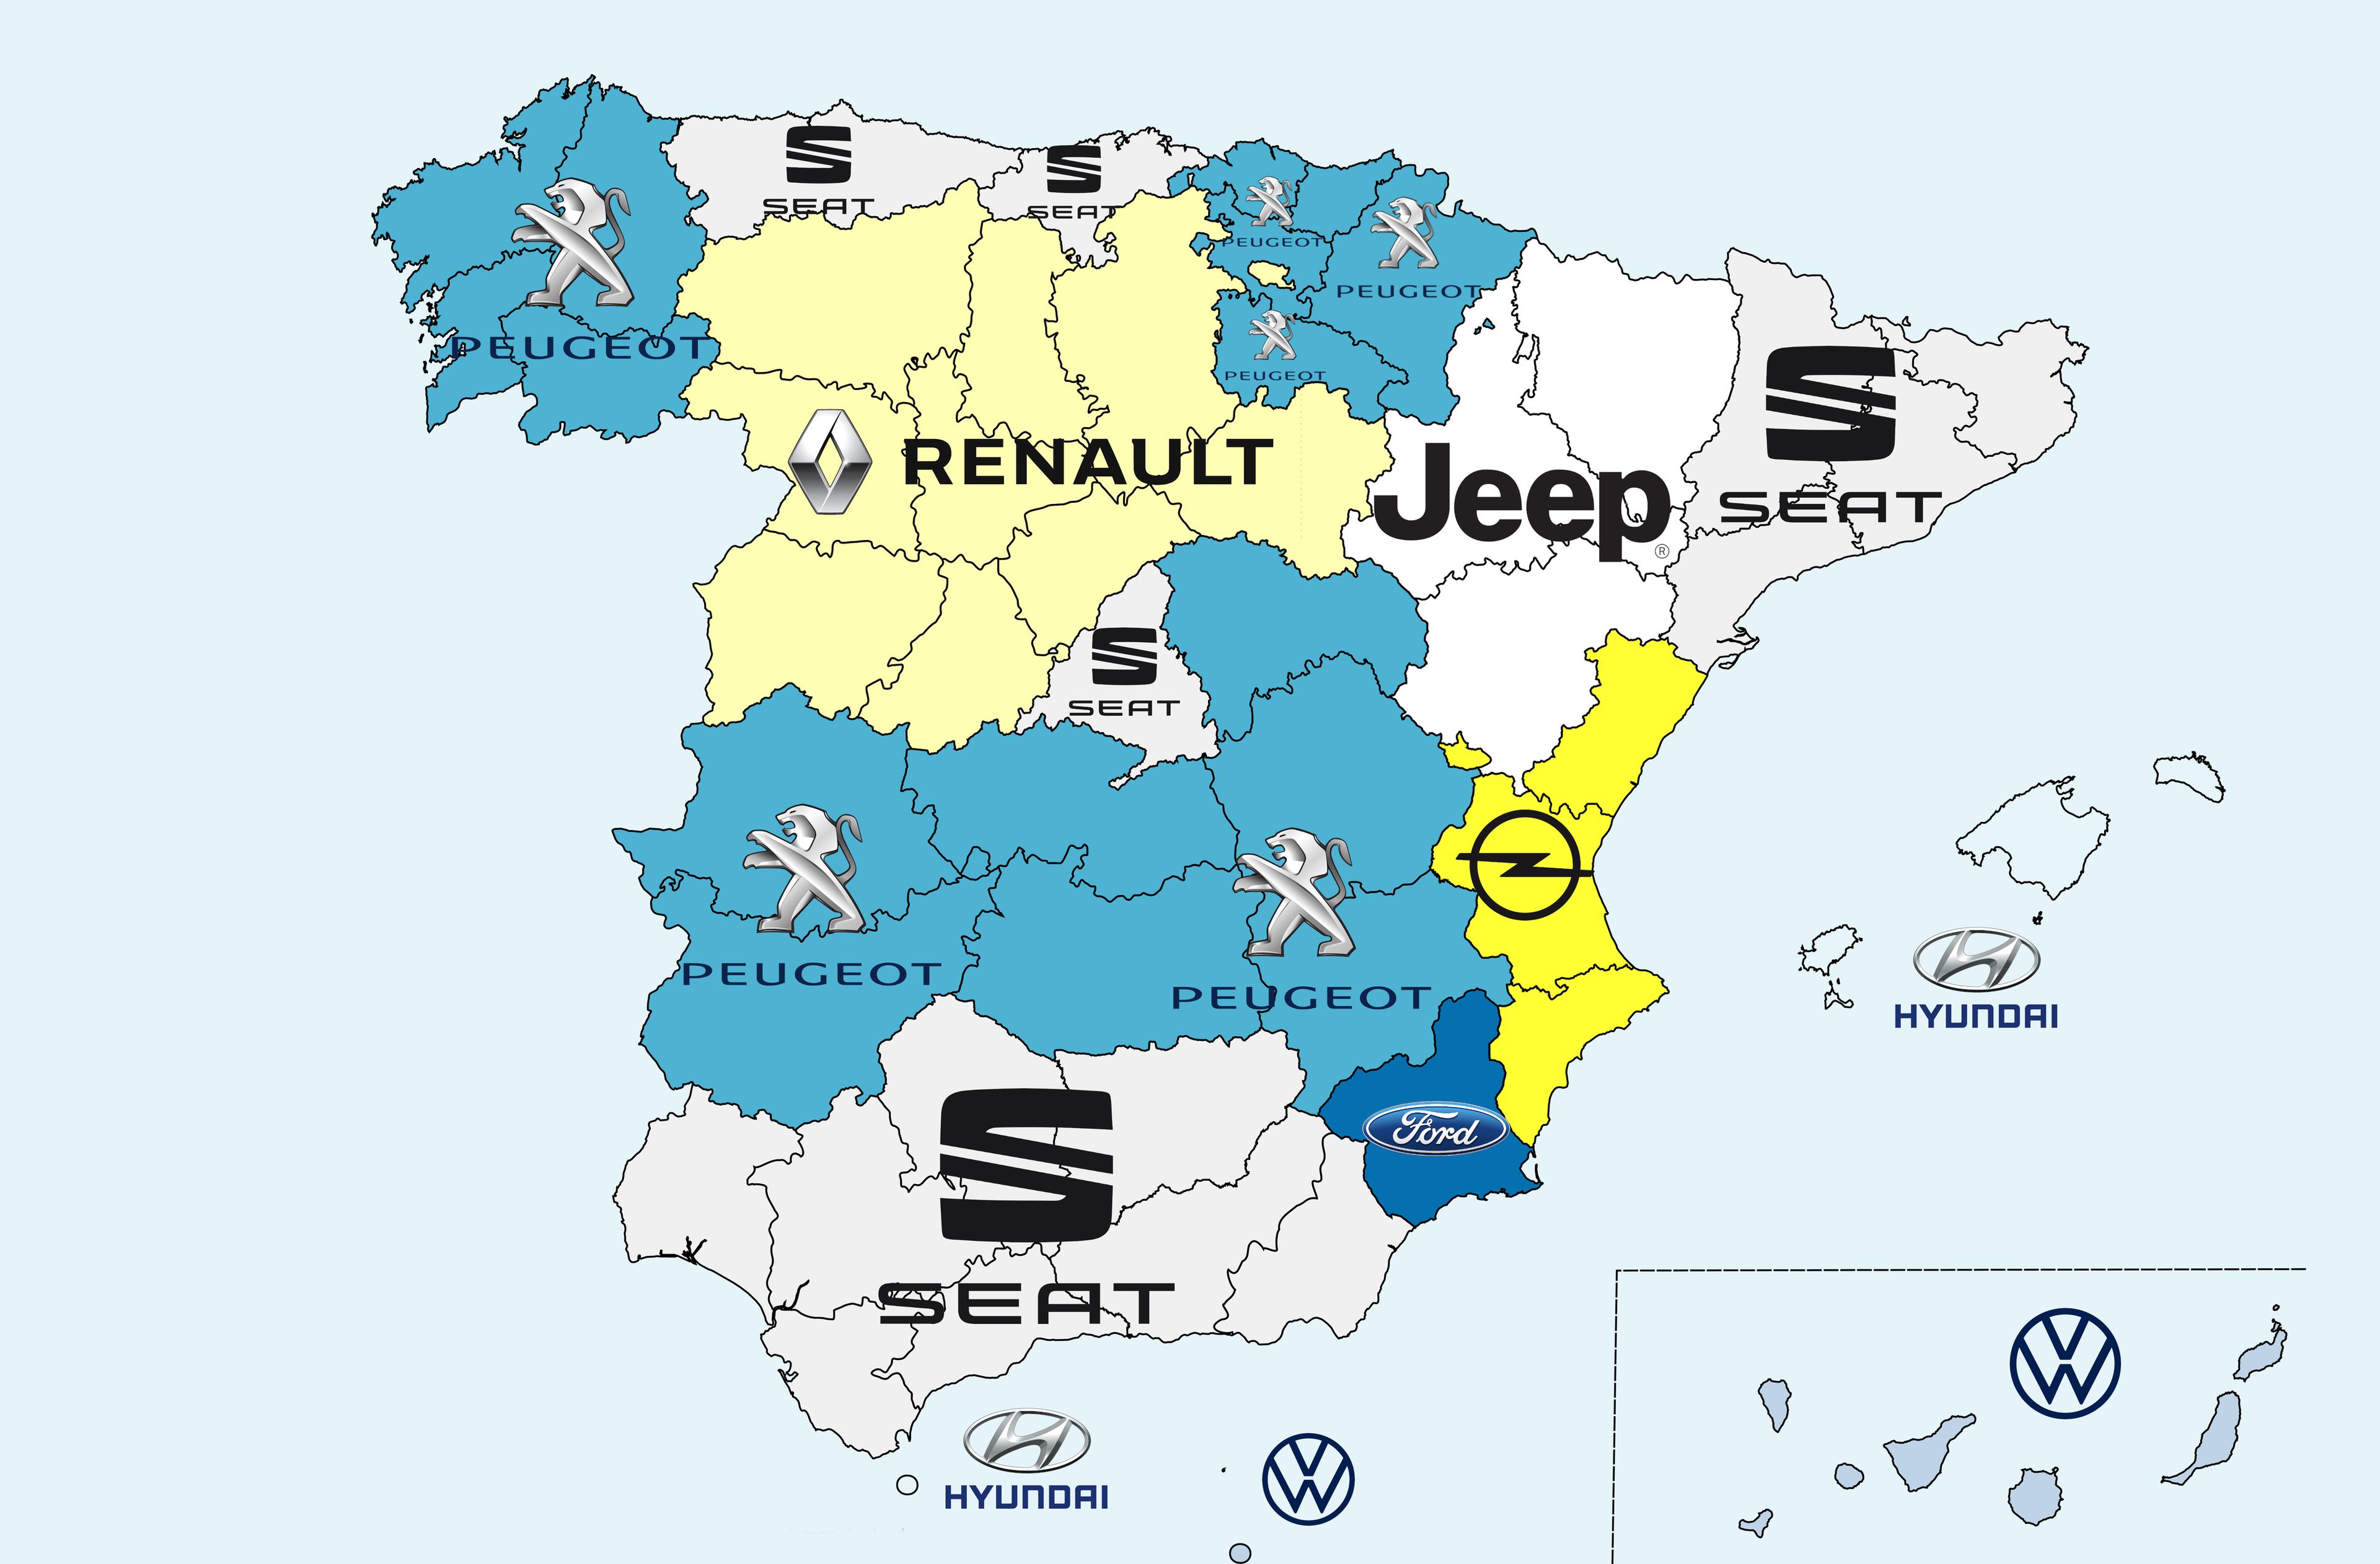 Lima ponerse en cuclillas sello 12 mapas revelan las marcas favoritas de los españoles por comunidades |  Business Insider España